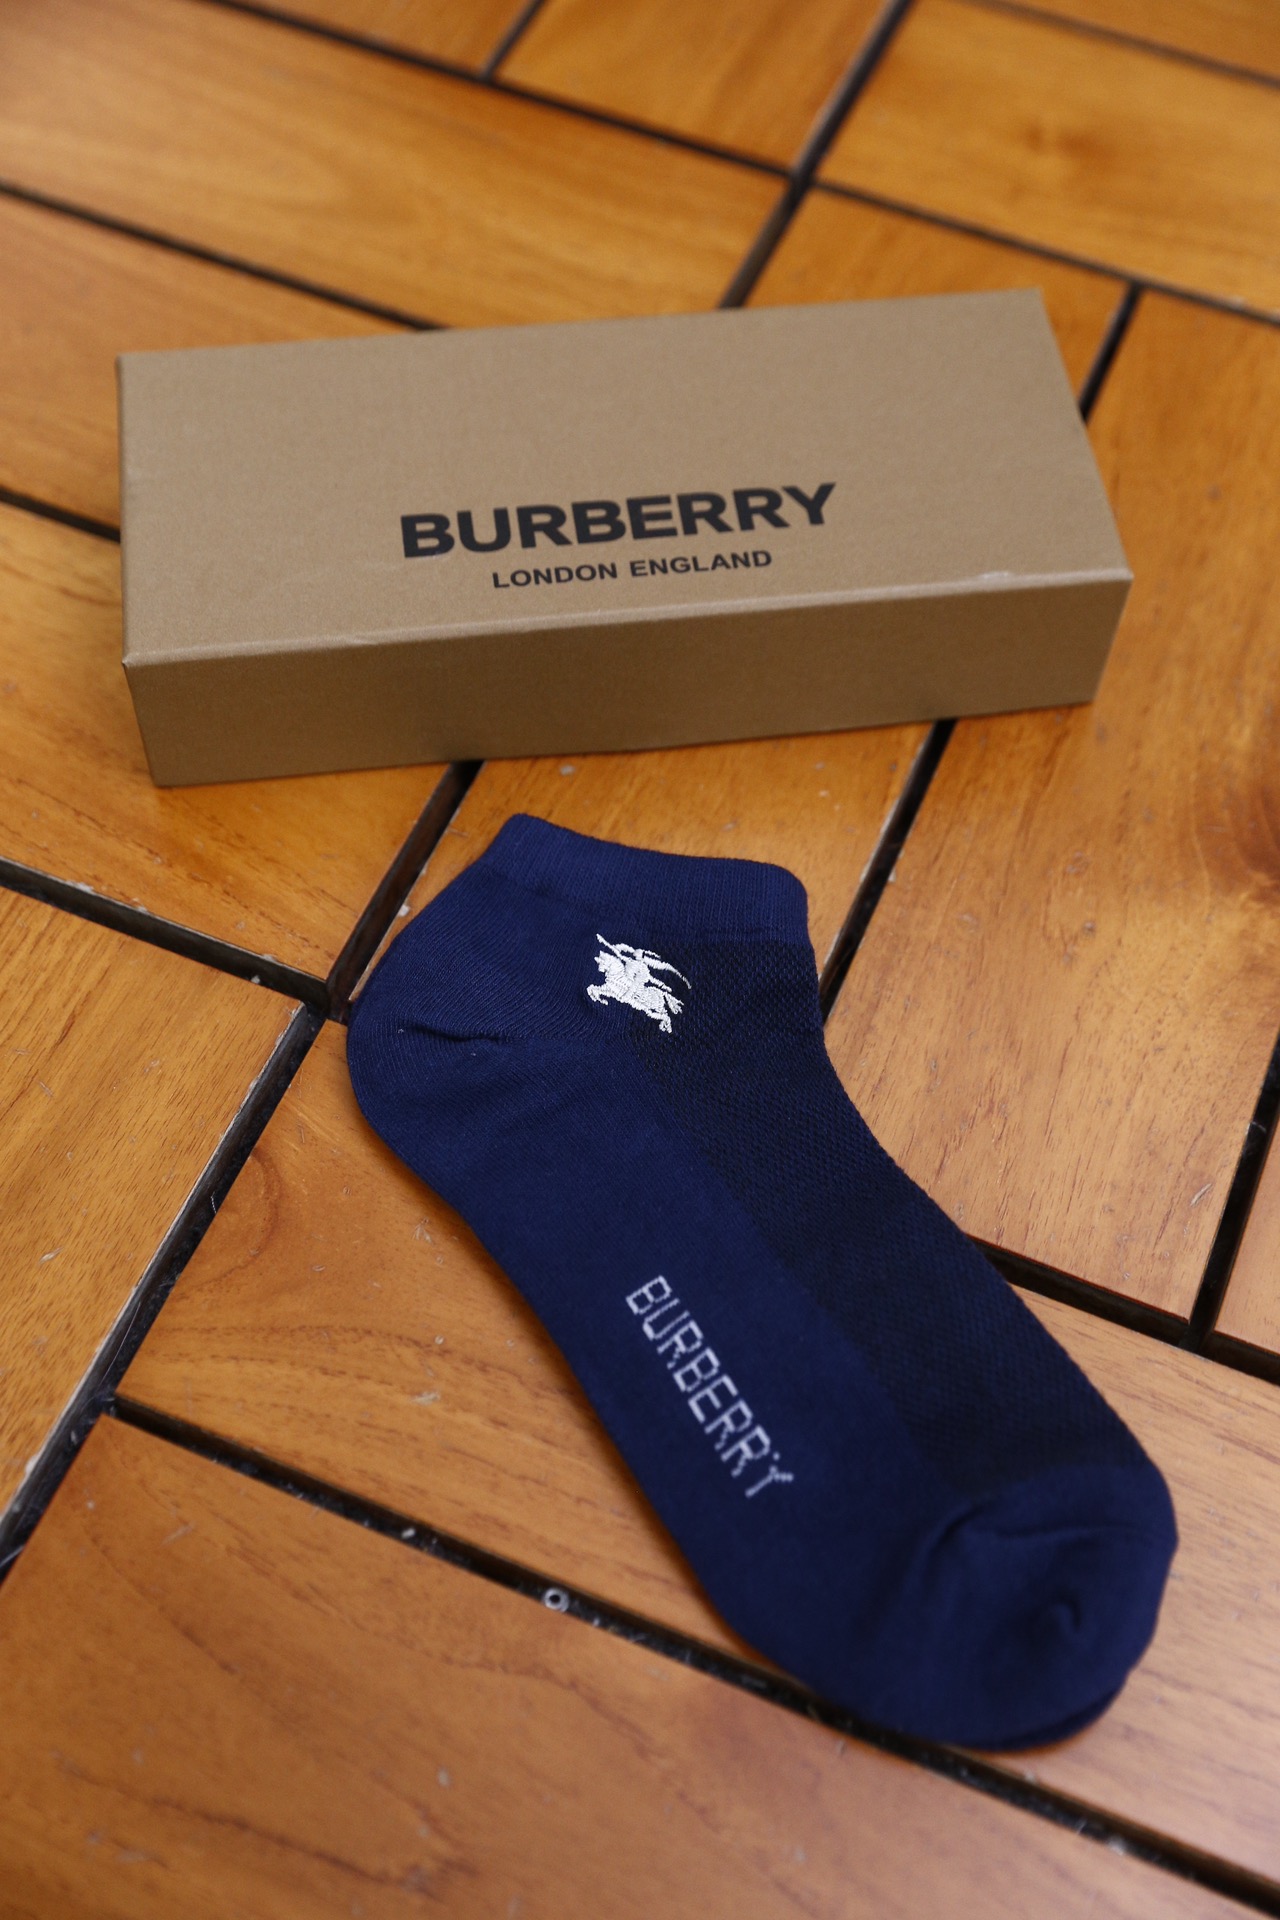 巴宝丽/Burb*rry.24新款袜子欧洲专柜出口订单吸汗透气防臭舒适袜子独家货源质量超赞是自己穿着送礼